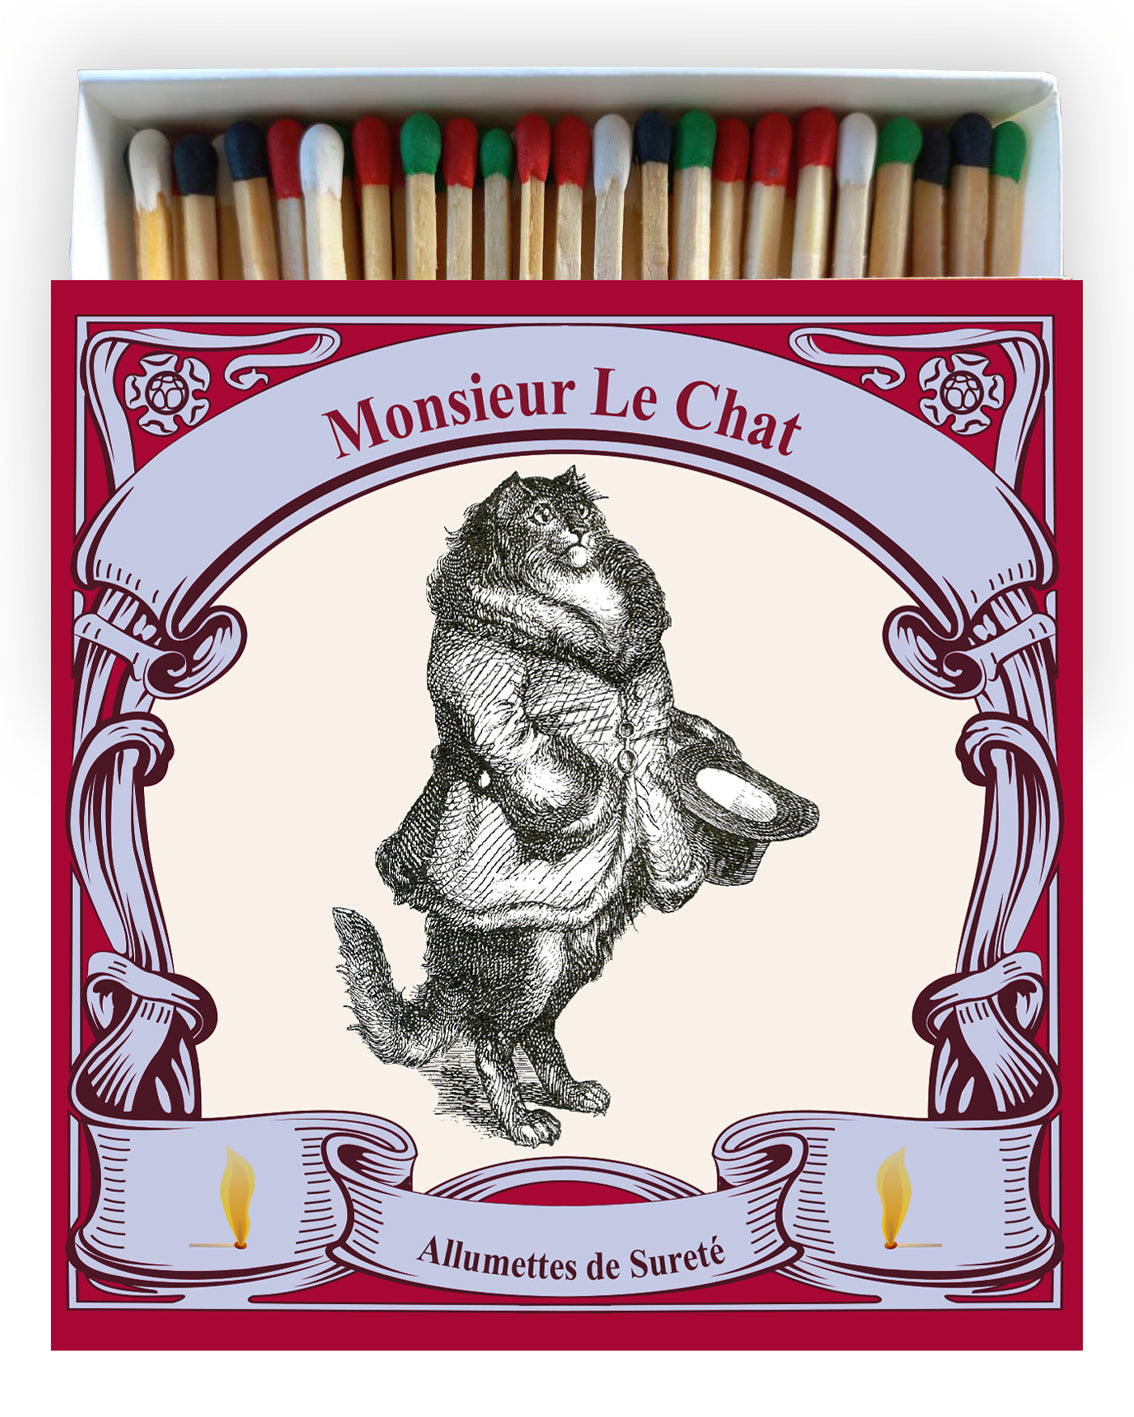 Monsieur Le Chat matches